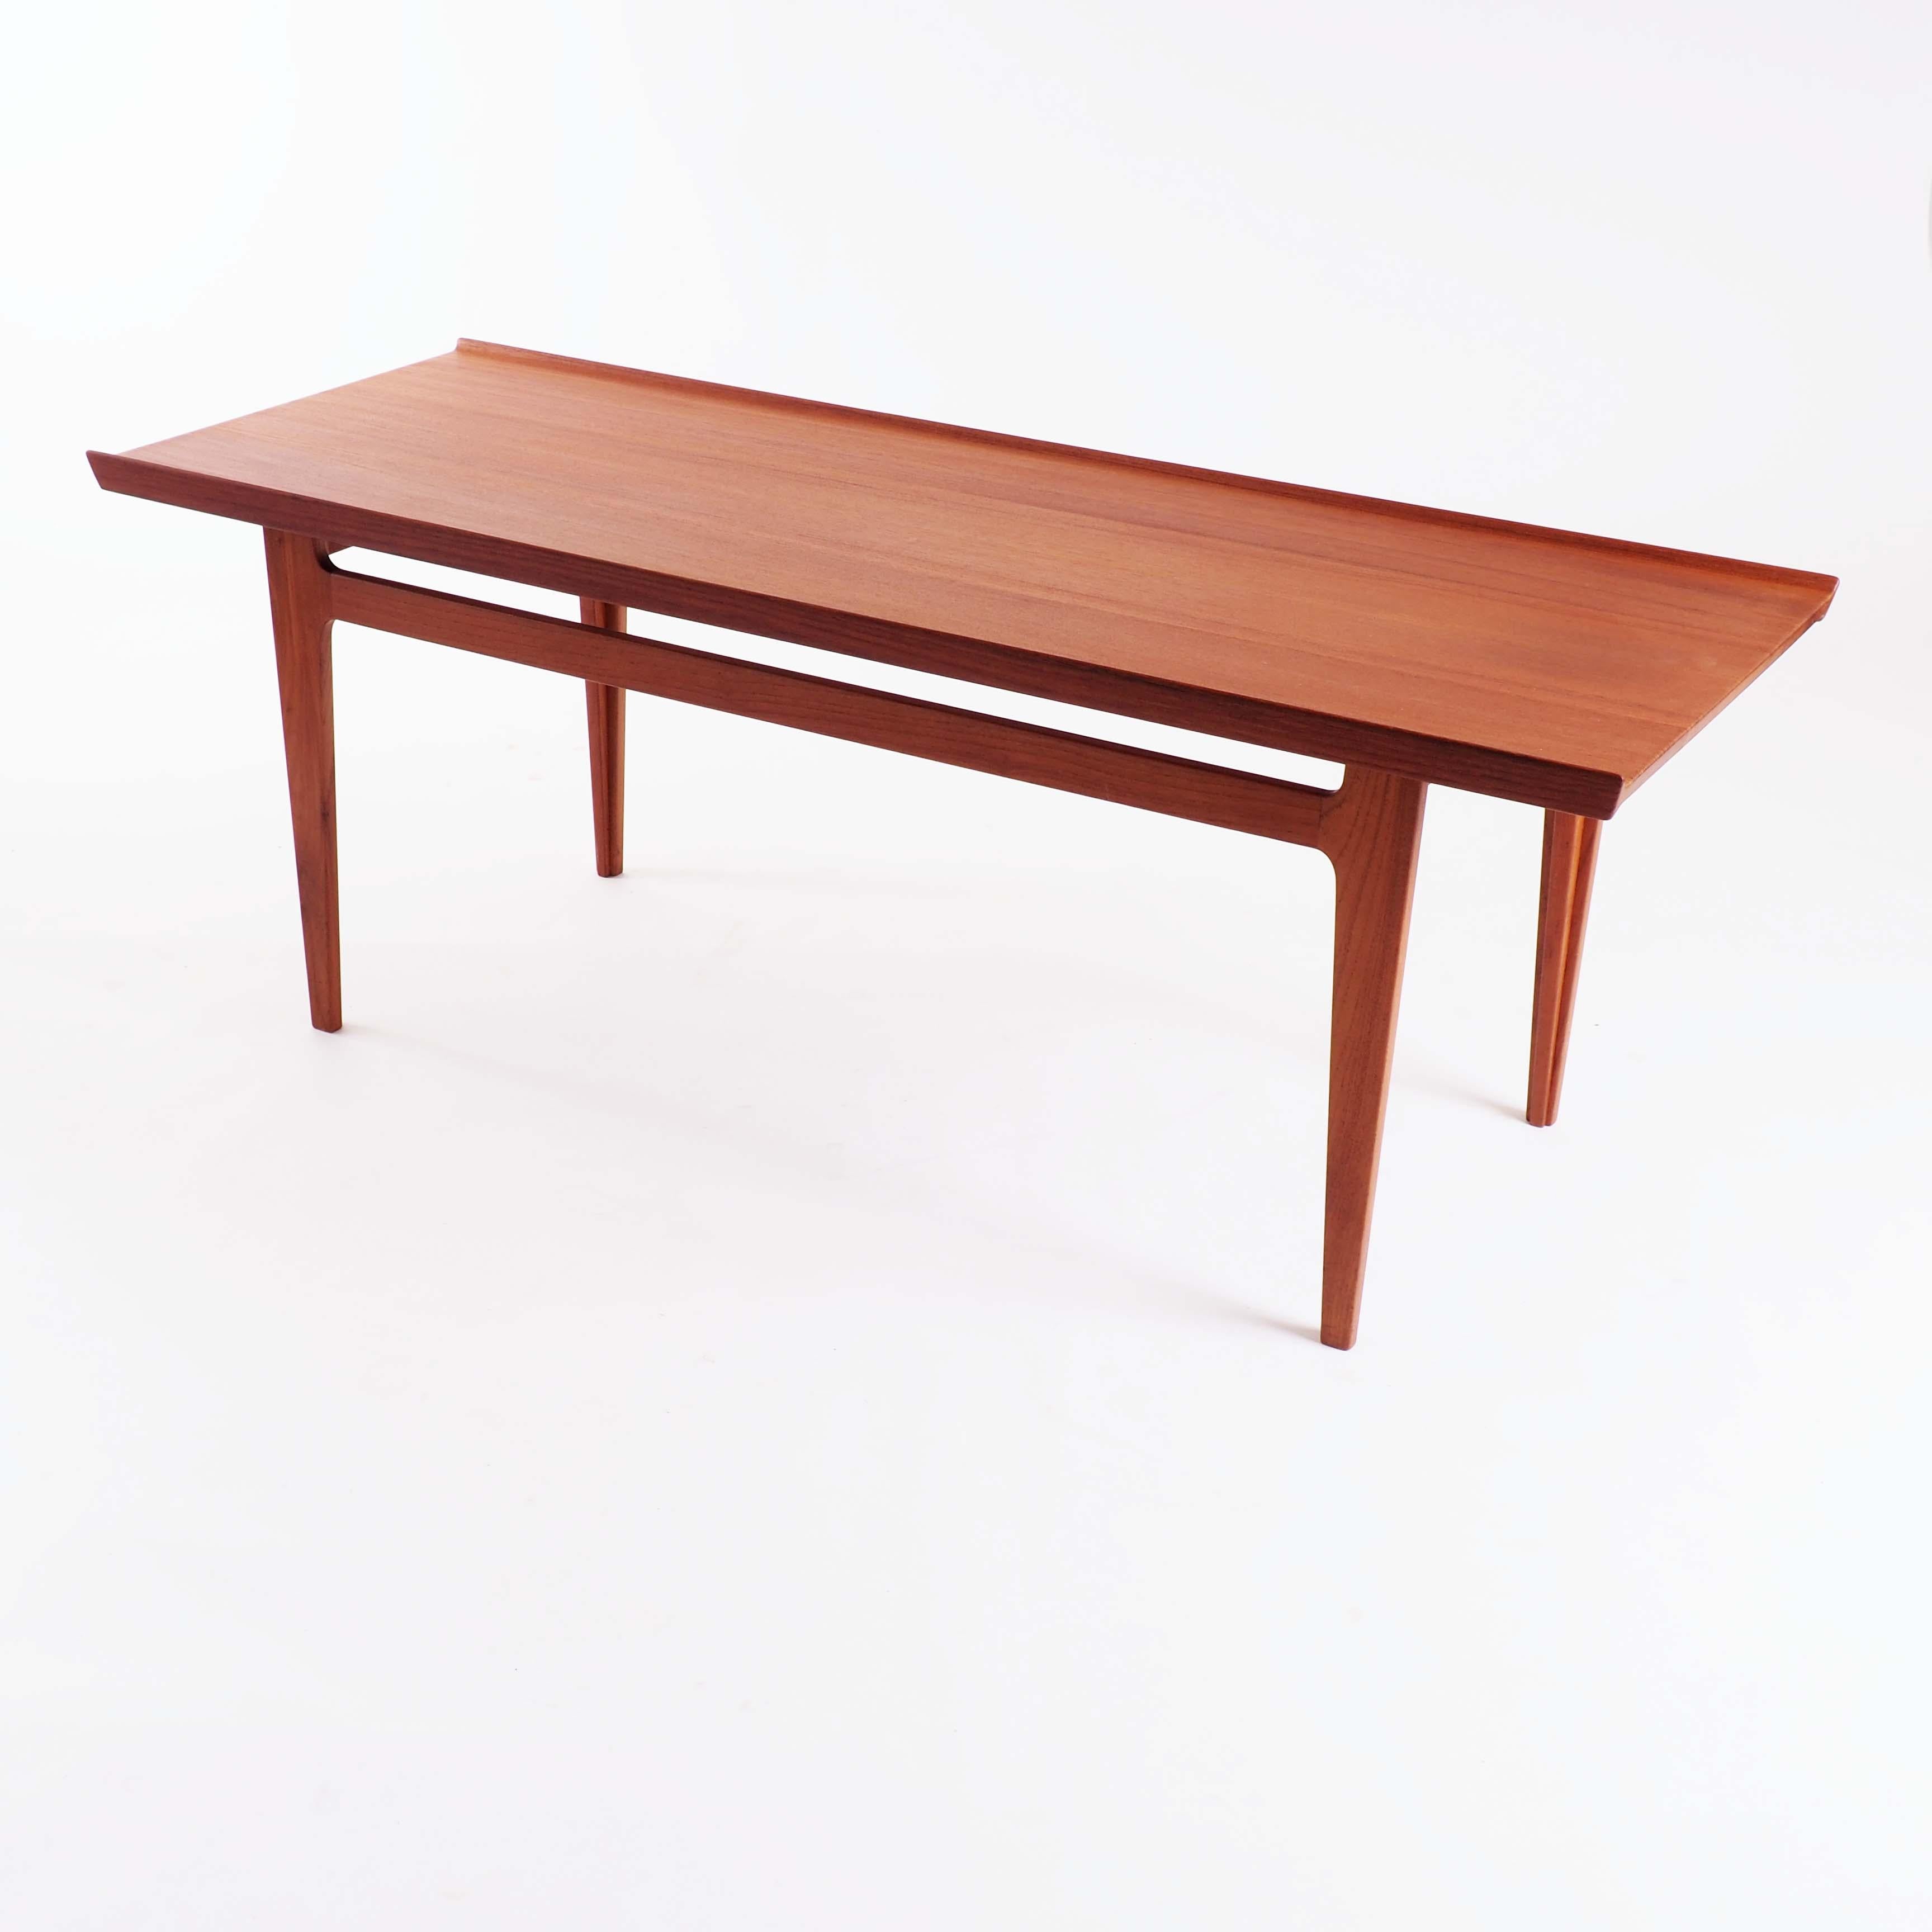 Cette table basse en teck massif a été conçue par Finn Juhl pour la firme danoise France & Son en 1959. Une version plus petite de cette conception est représentée dans la propre maison de Finn Juhls, aujourd'hui un musée.
 